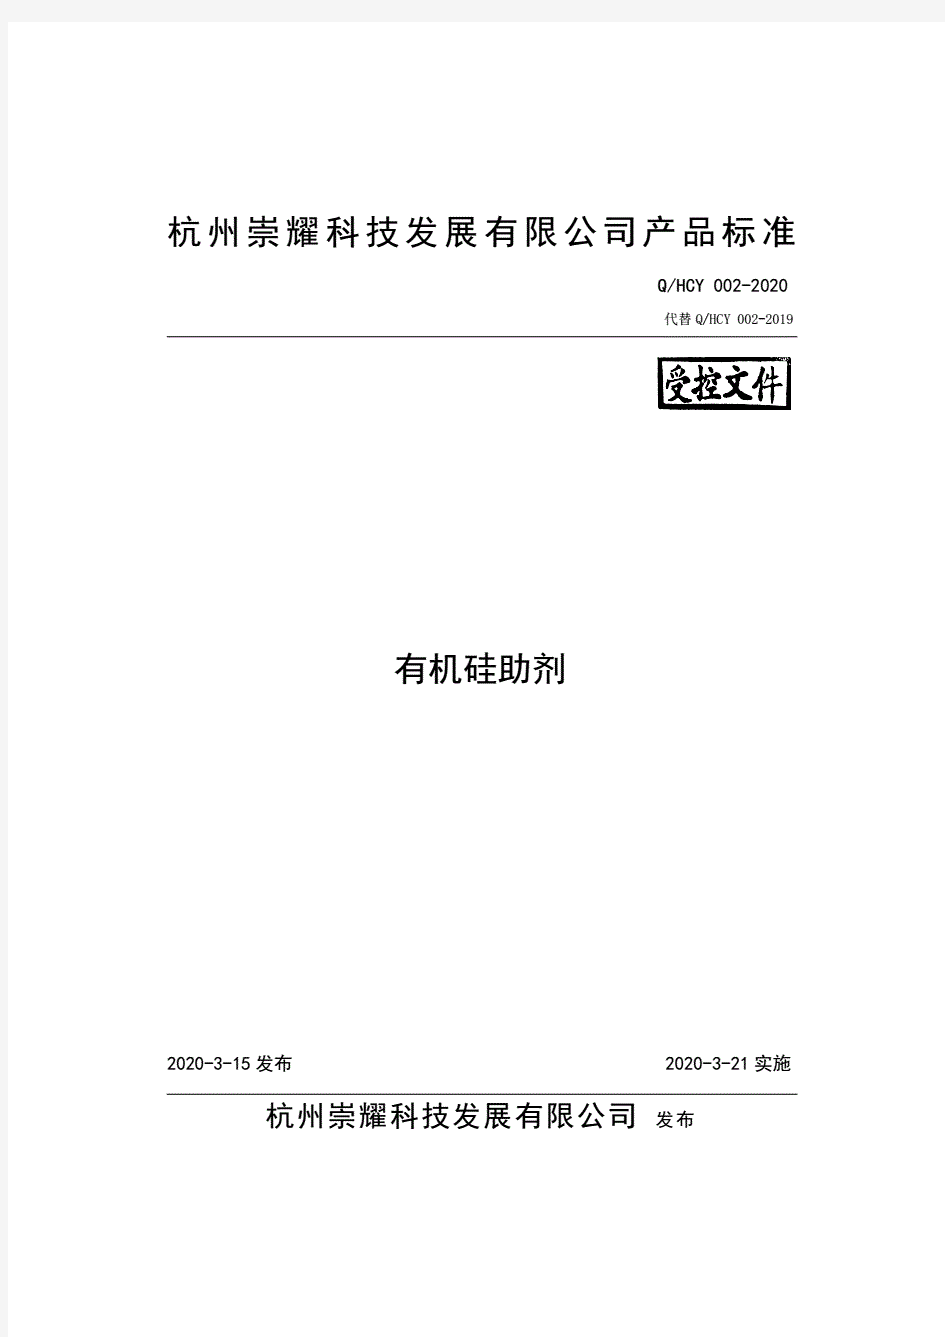 Q_HCY002-2020有机硅助剂企业标准